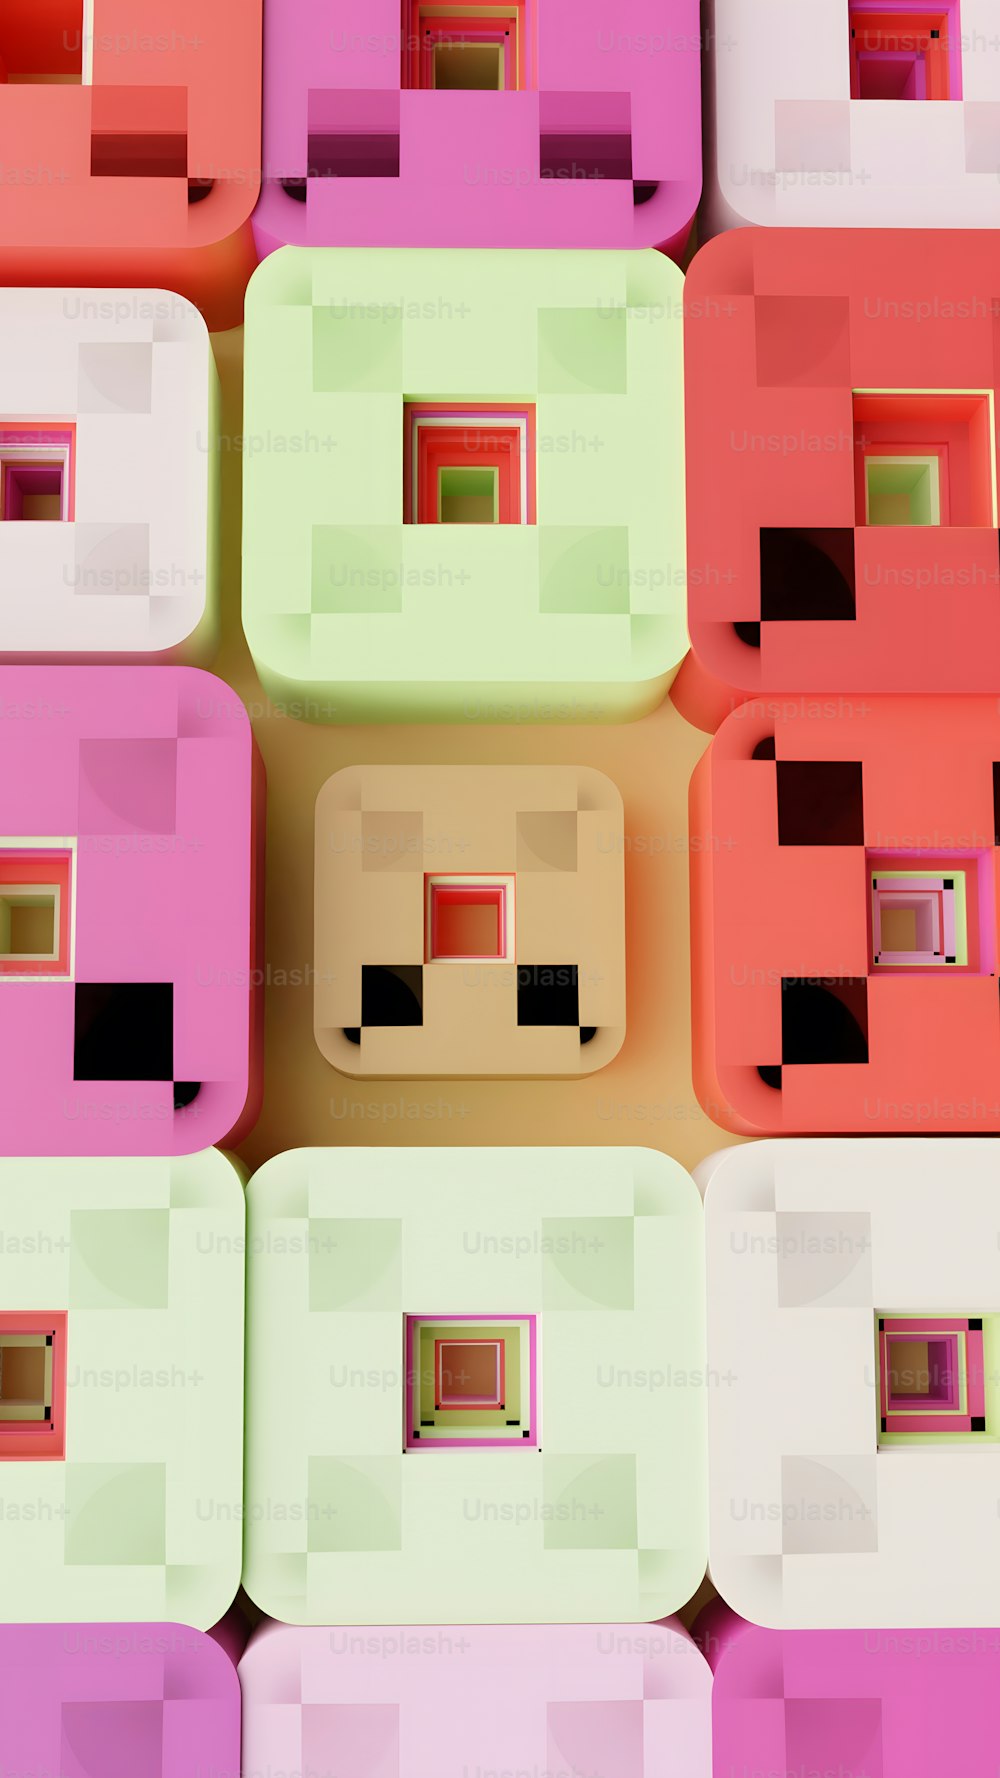 un gruppo di diversi blocchi colorati seduti uno accanto all'altro